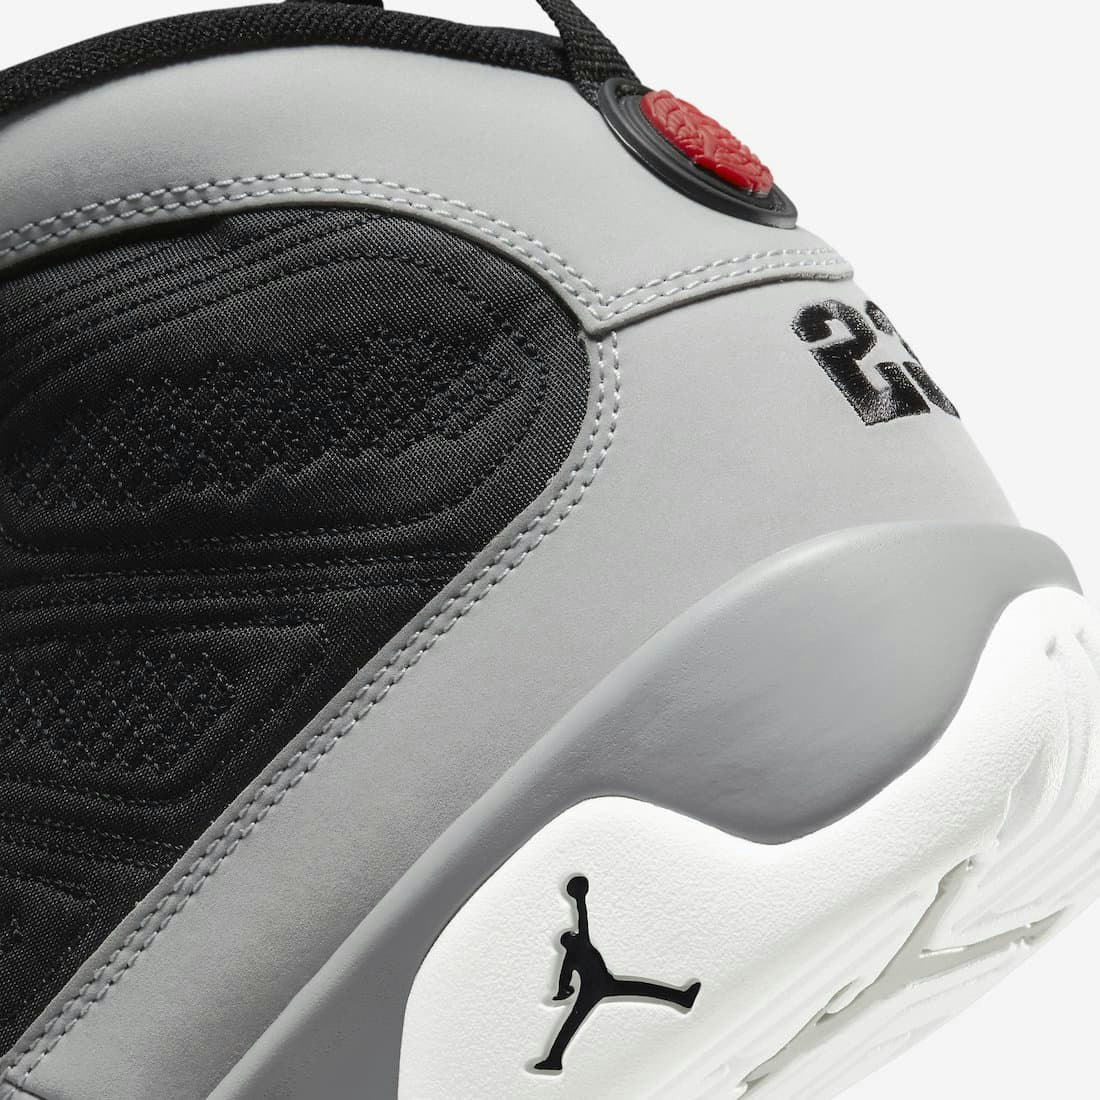 Air Jordan 9 “Particle Grey” 